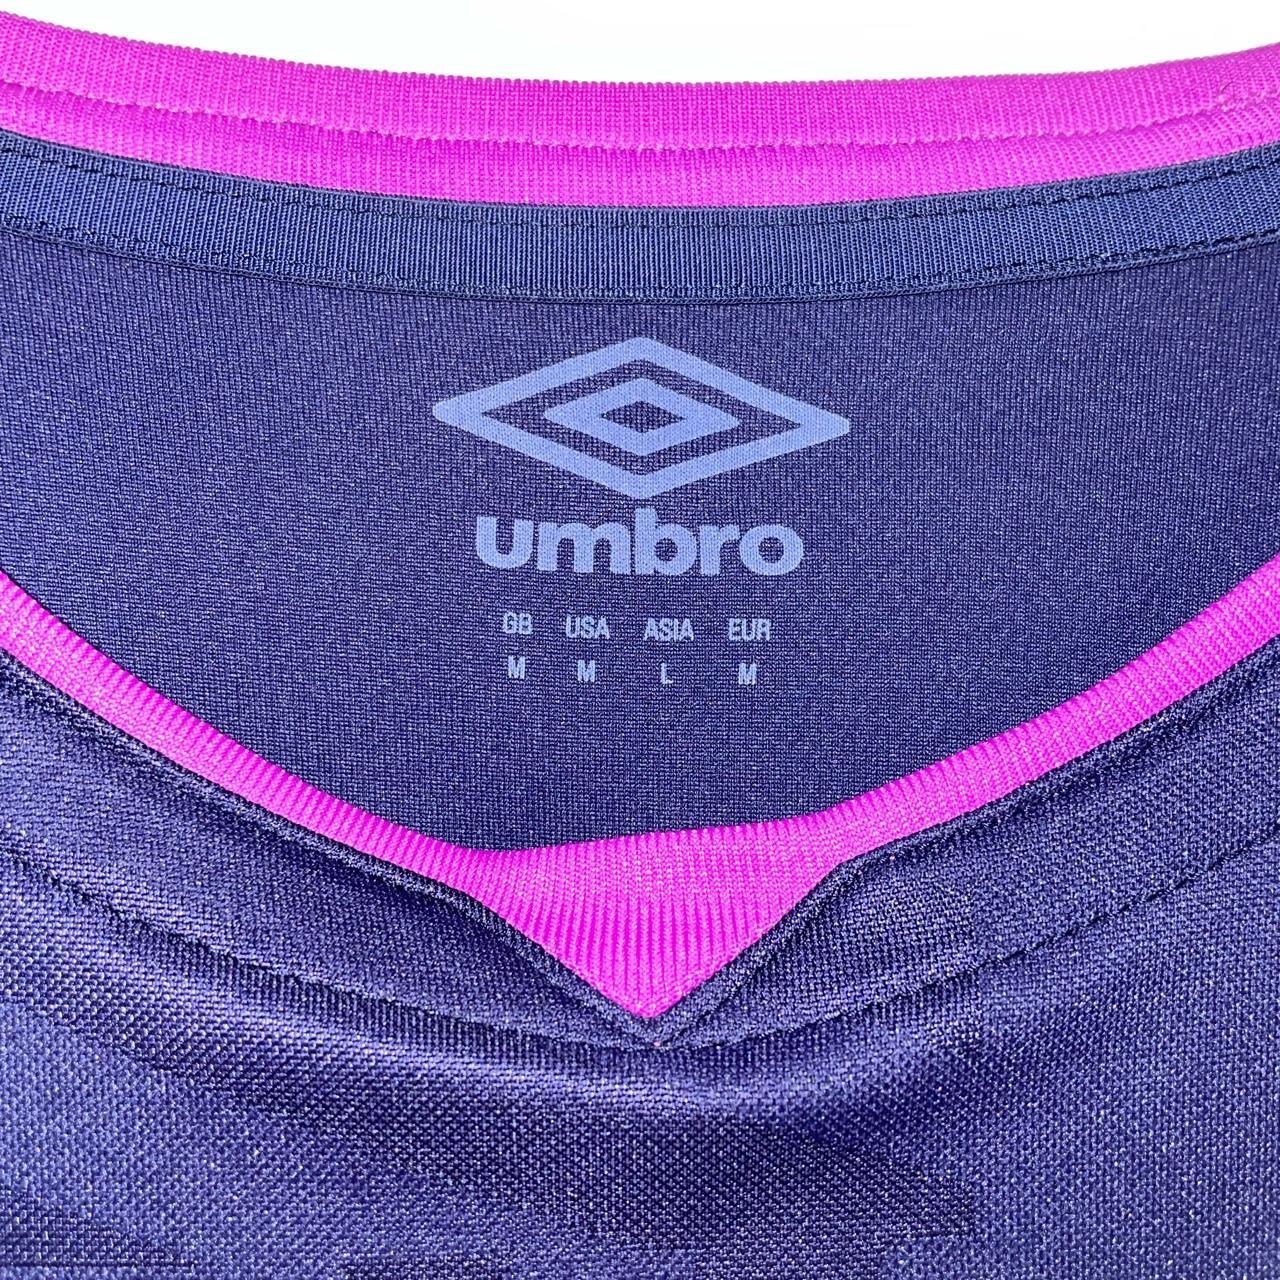 Umbro Men's Purple and Navy T-shirt | Depop